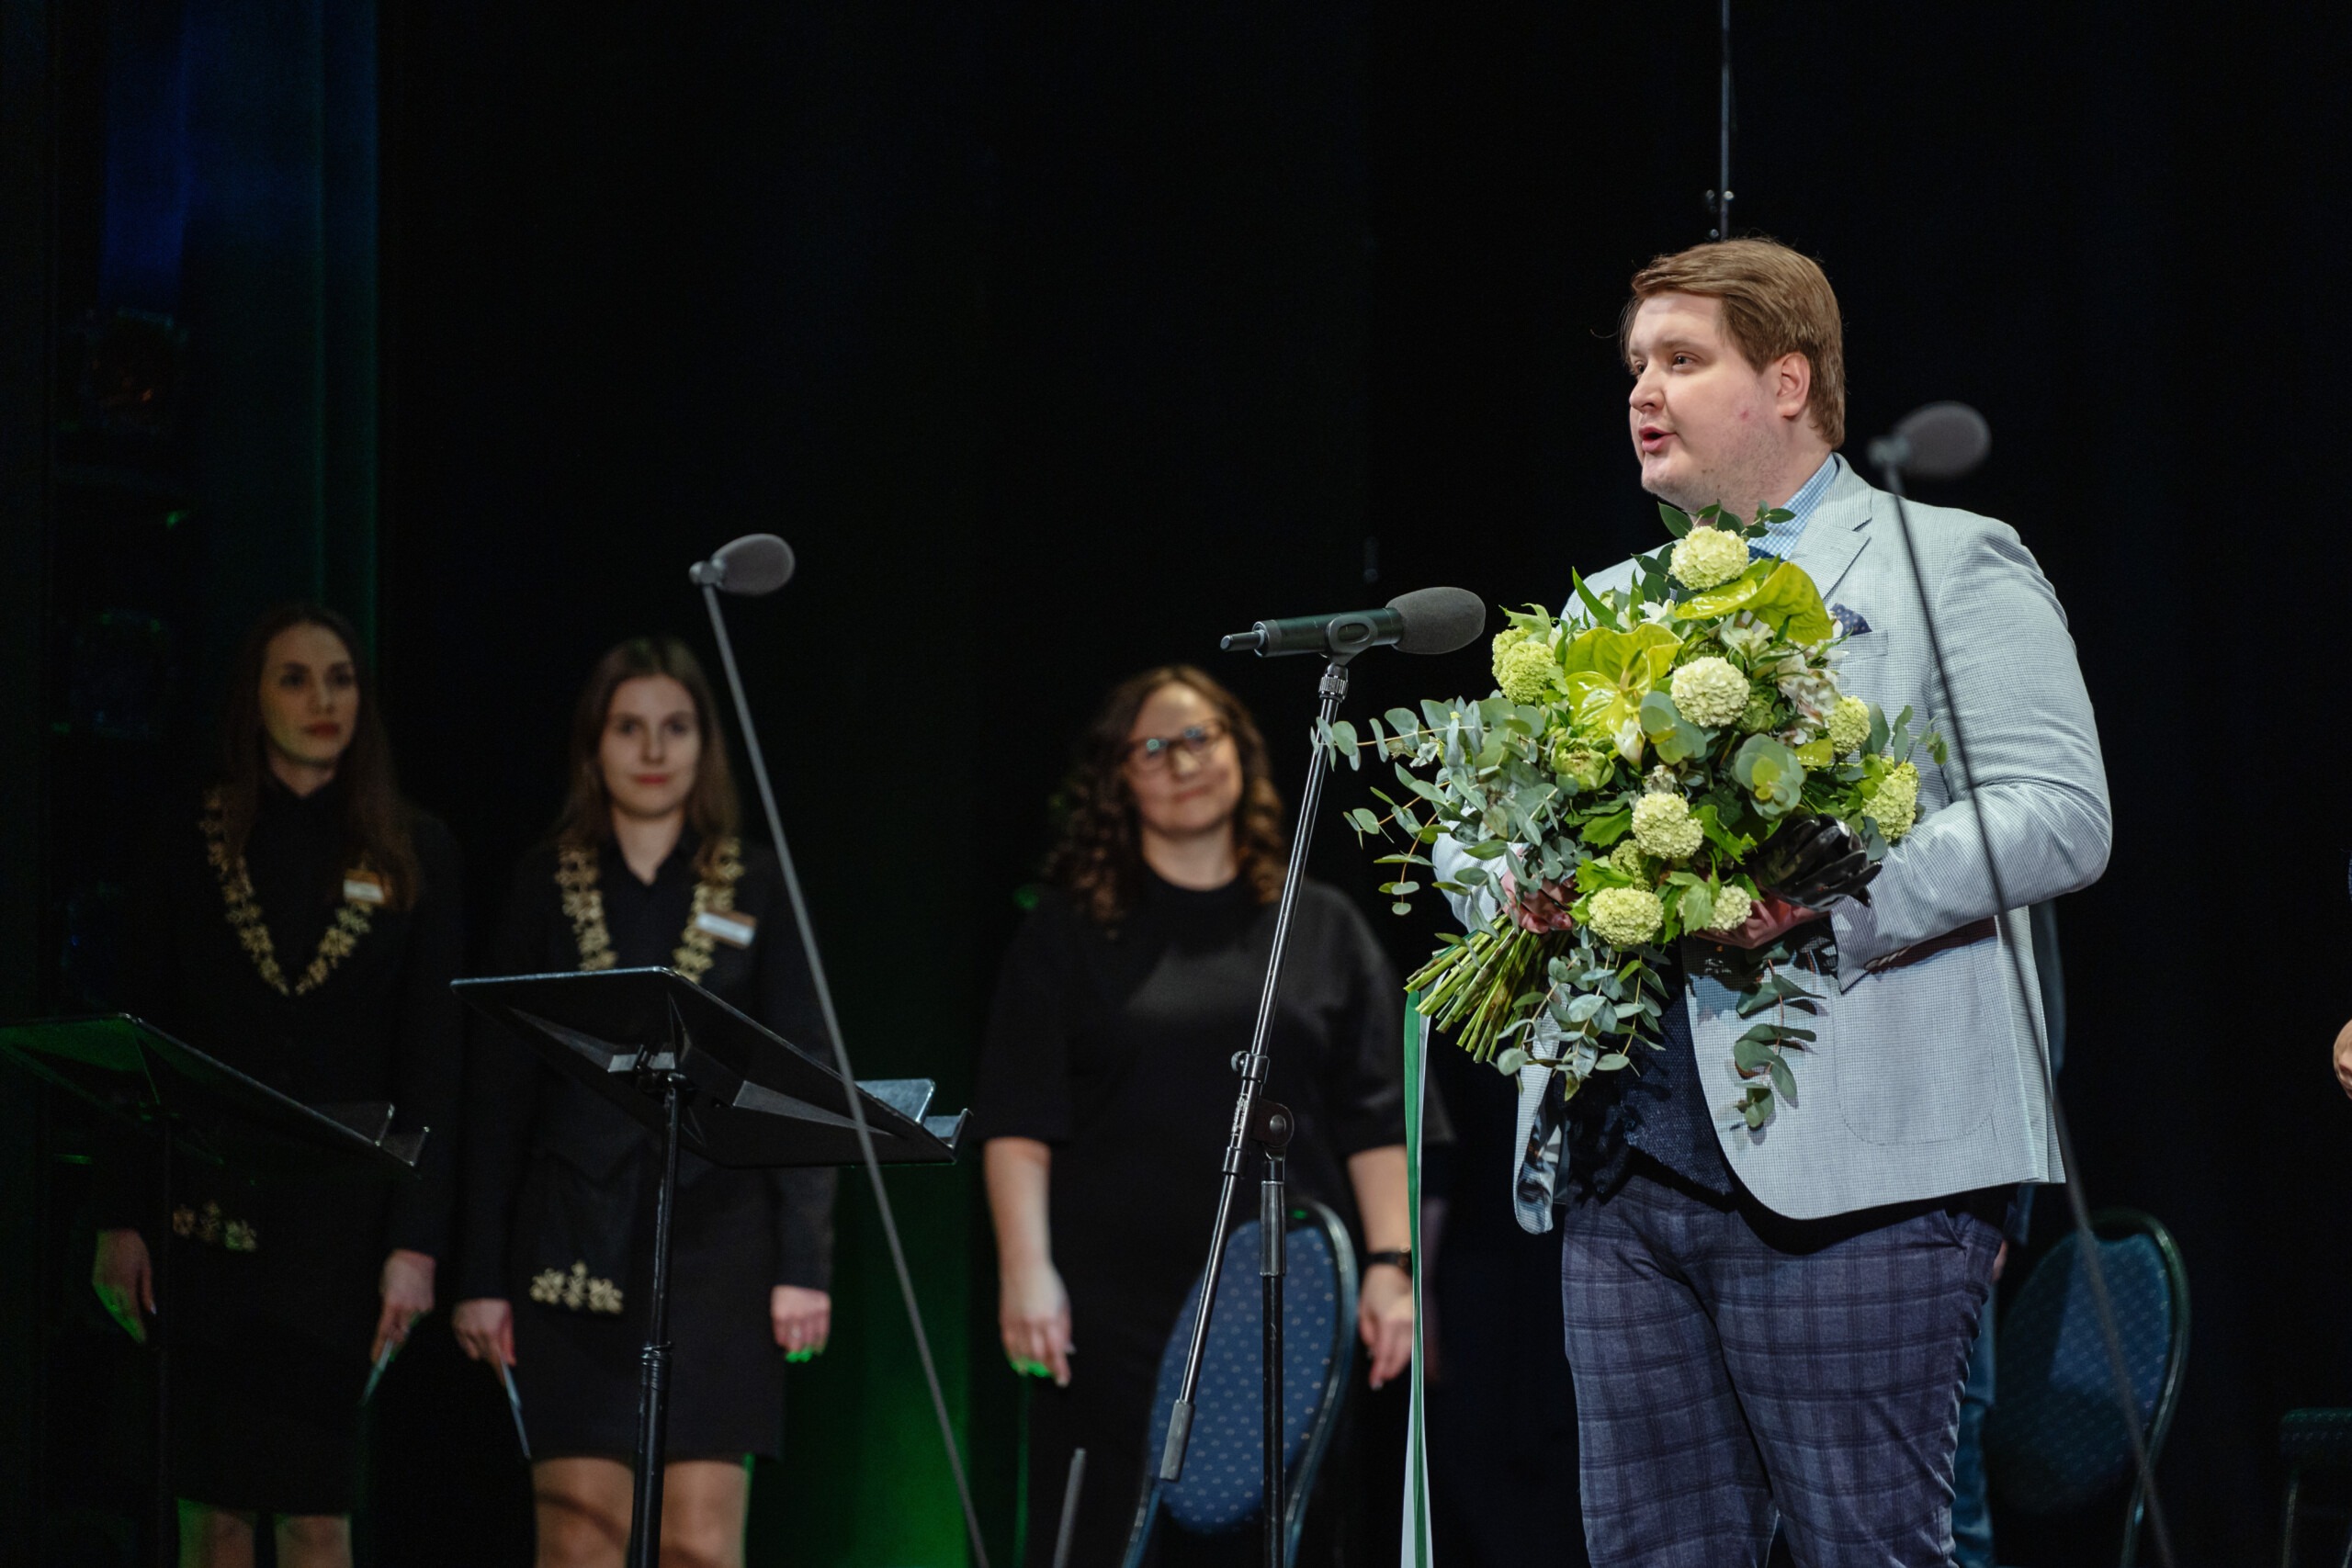 Pildil on Reigo Tamm publikupreemia üleandmisel. Ta seisab laval mikrofoni taga, käes rohekates toonides lillekimp, seljas hall pintsak ja ruudulised püksid. Tema taga paistab kolm noort naist.